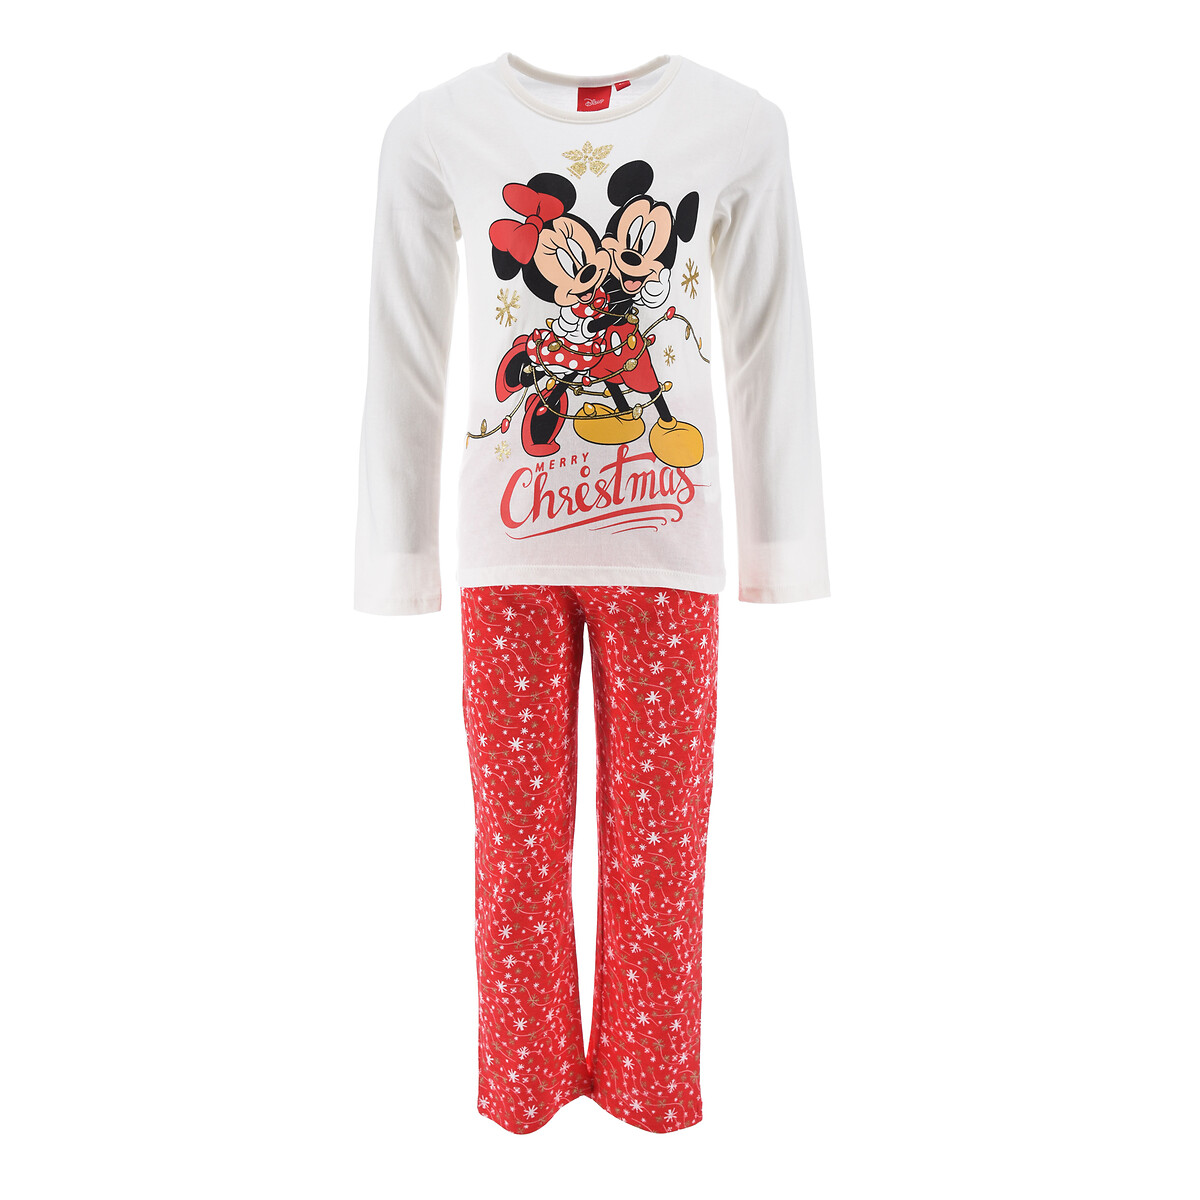 Cotton Christmas Pyjamas